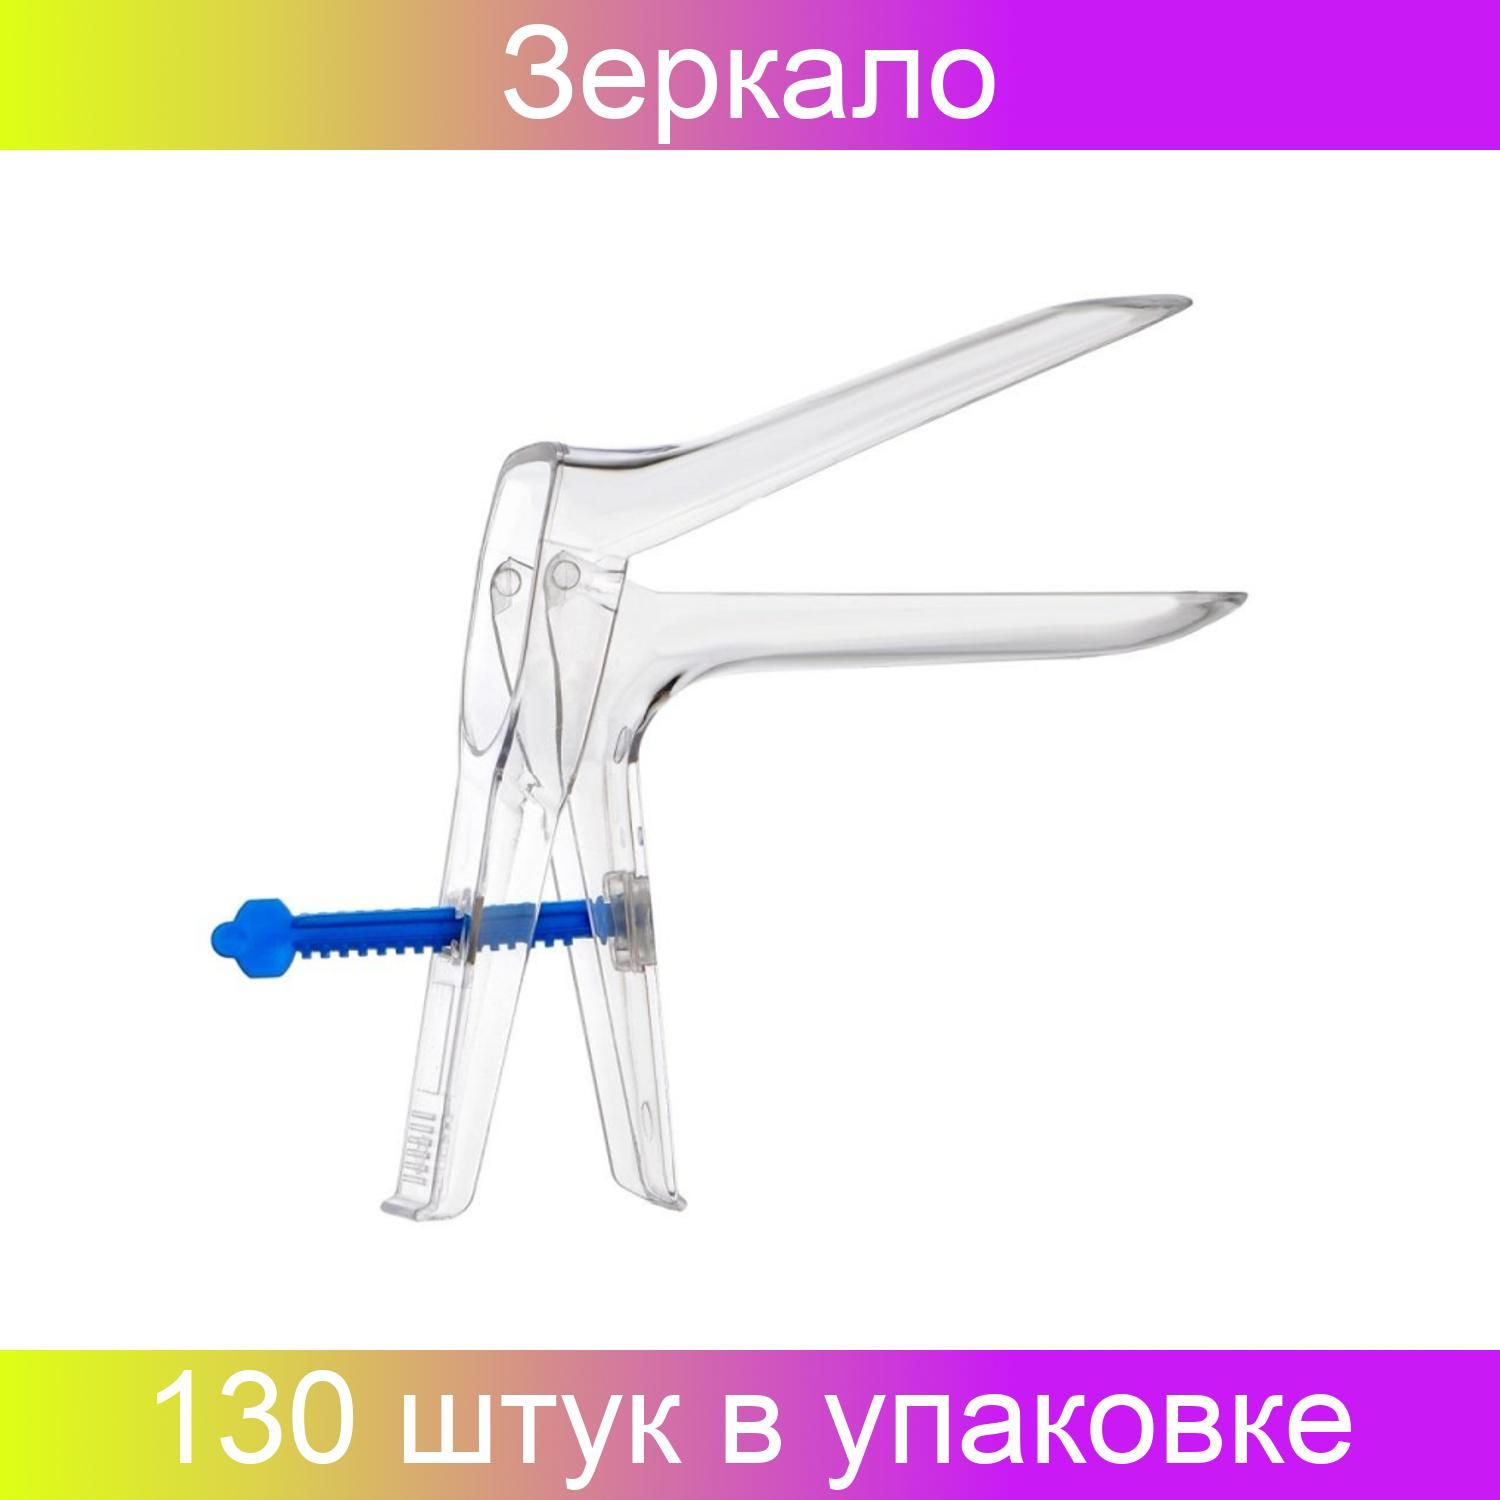 Зеркало гинекологическое стерильное. Гинекологическое зеркало Куско. Зеркало гинекологическое с ЦПФ стерильное s №105 (1/1) Диаклон, Россия.